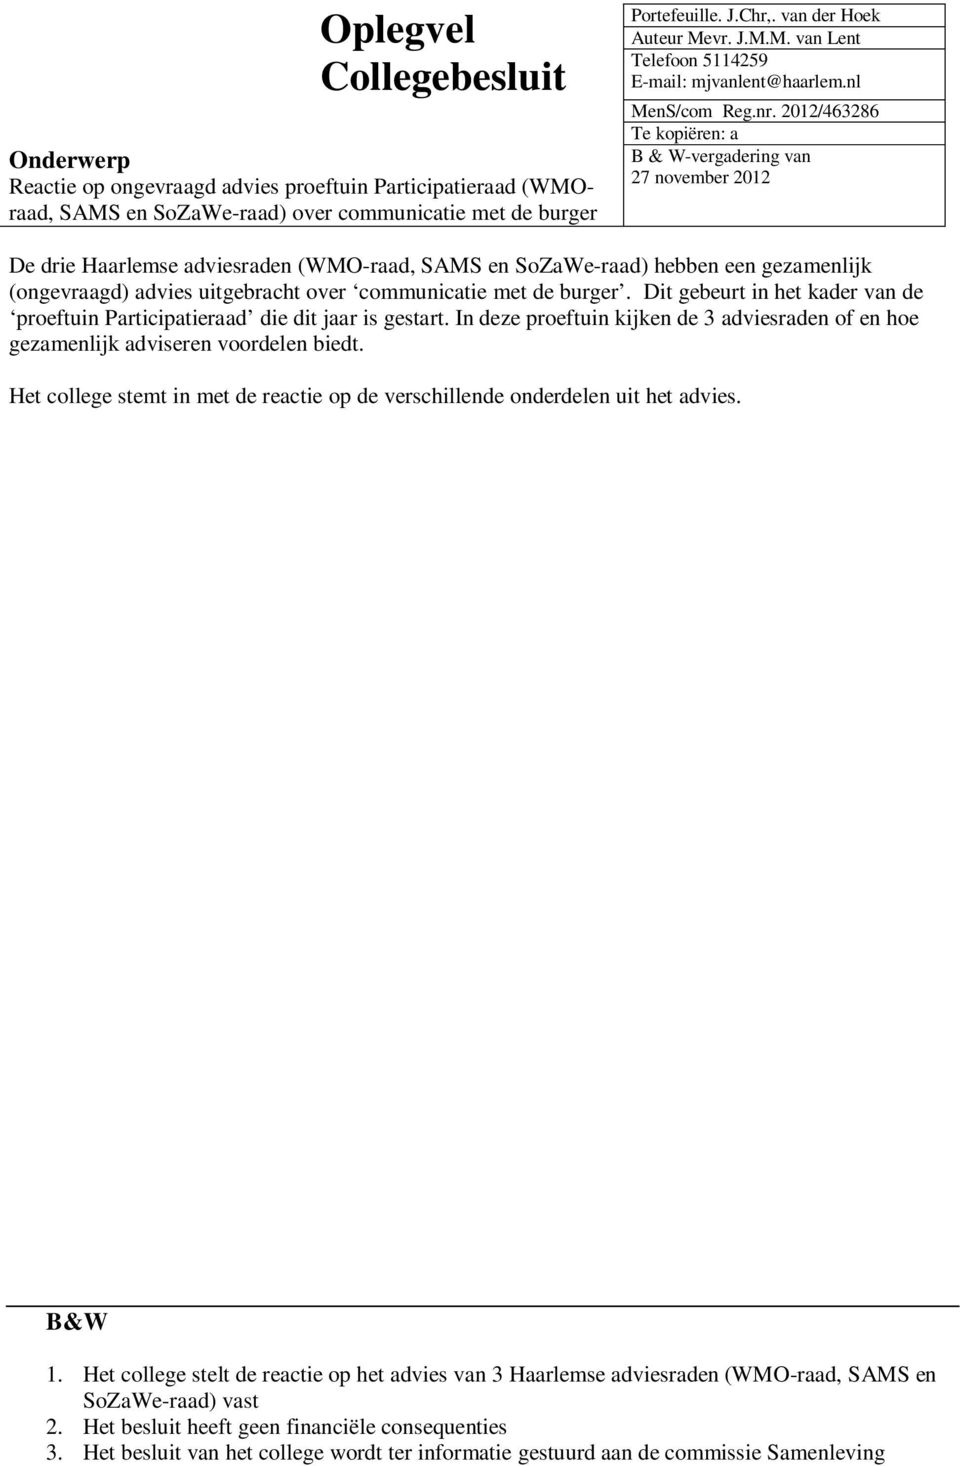 2012/463286 Te kopiëren: a B & W-vergadering van 27 november 2012 De drie Haarlemse adviesraden (WMO-raad, SAMS en SoZaWe-raad) hebben een gezamenlijk (ongevraagd) advies uitgebracht over